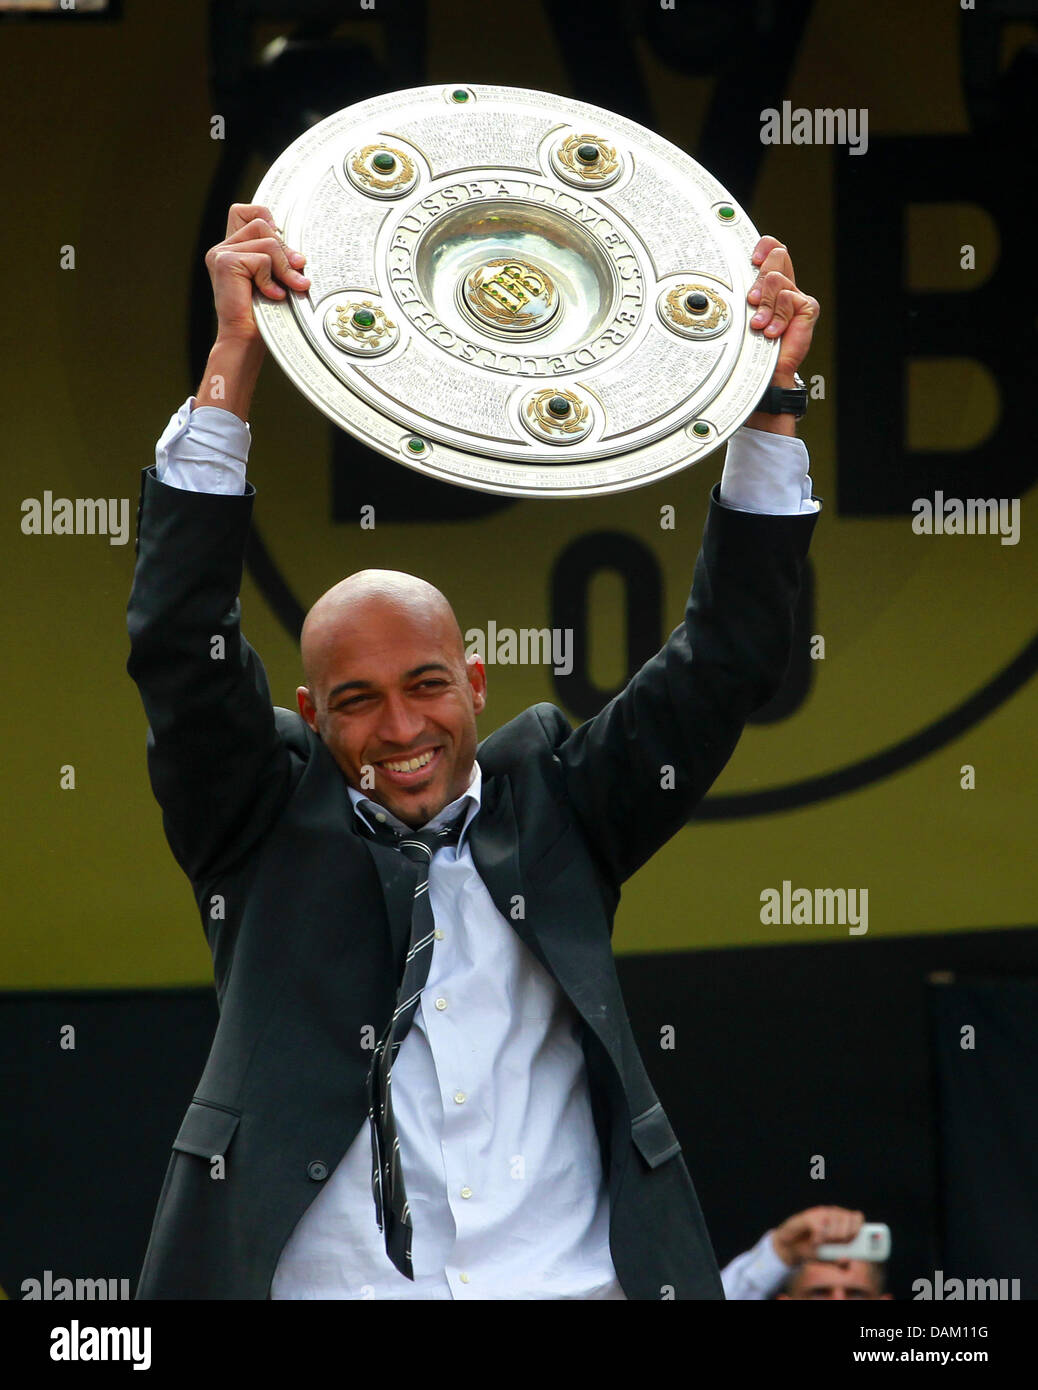 Le joueur de football soccer club BVB Dortmund, Leonardo Dede, soutient le trophée de championnat de Bundesliga lors de la célébration à Dortmund, en Allemagne, le 15 mai 2011. Borussia Dortmund (BVB) est le champion de football allemande de 2010-2011. Photo : Roland Weihrauch Banque D'Images